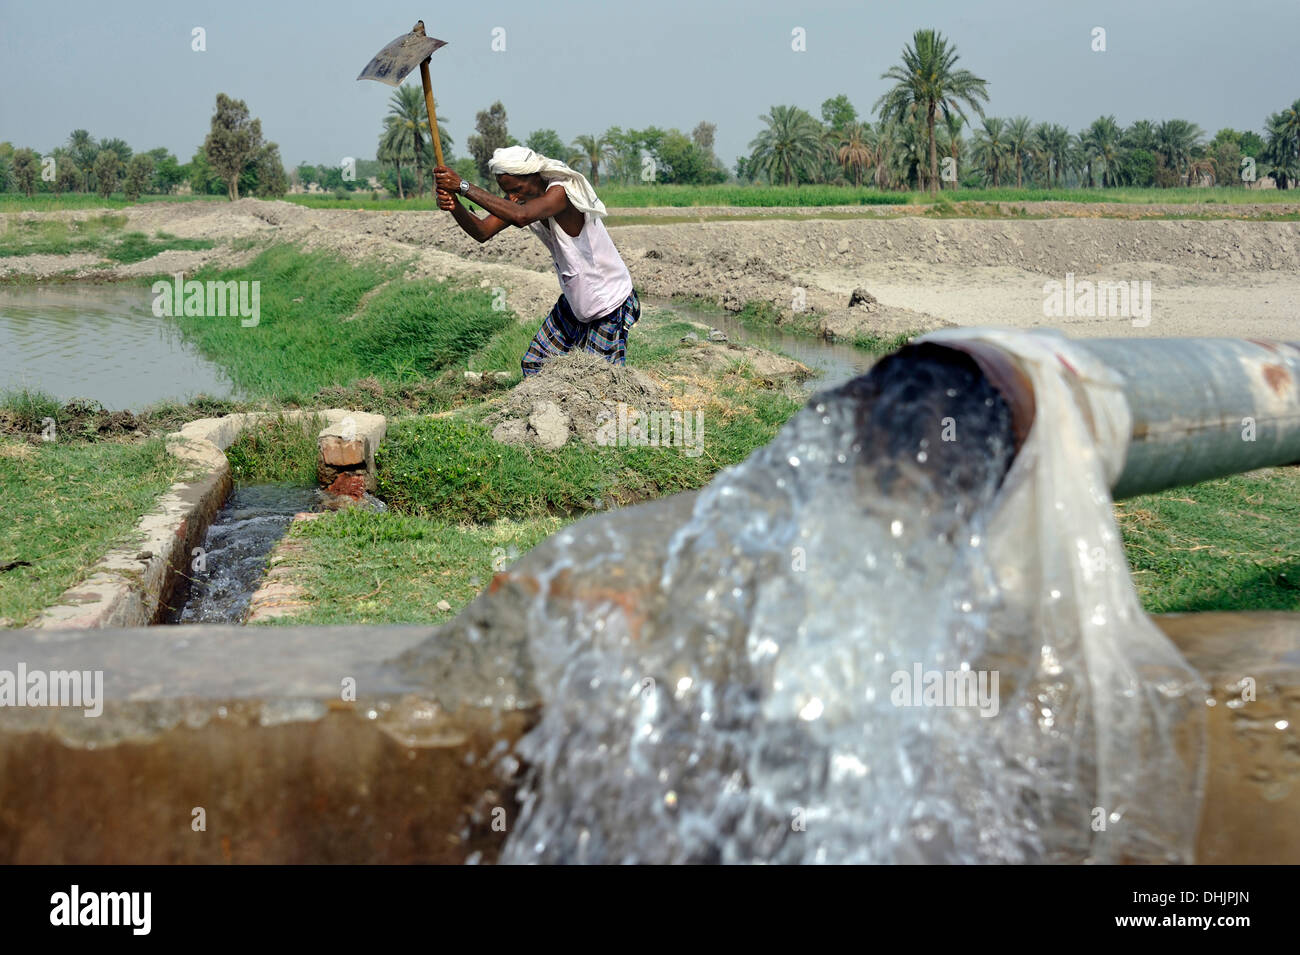 Le Pakistan, Punjab, village Basti Walla Lehar, l'homme le nettoyage ethnique un fossé d'irrigation Banque D'Images